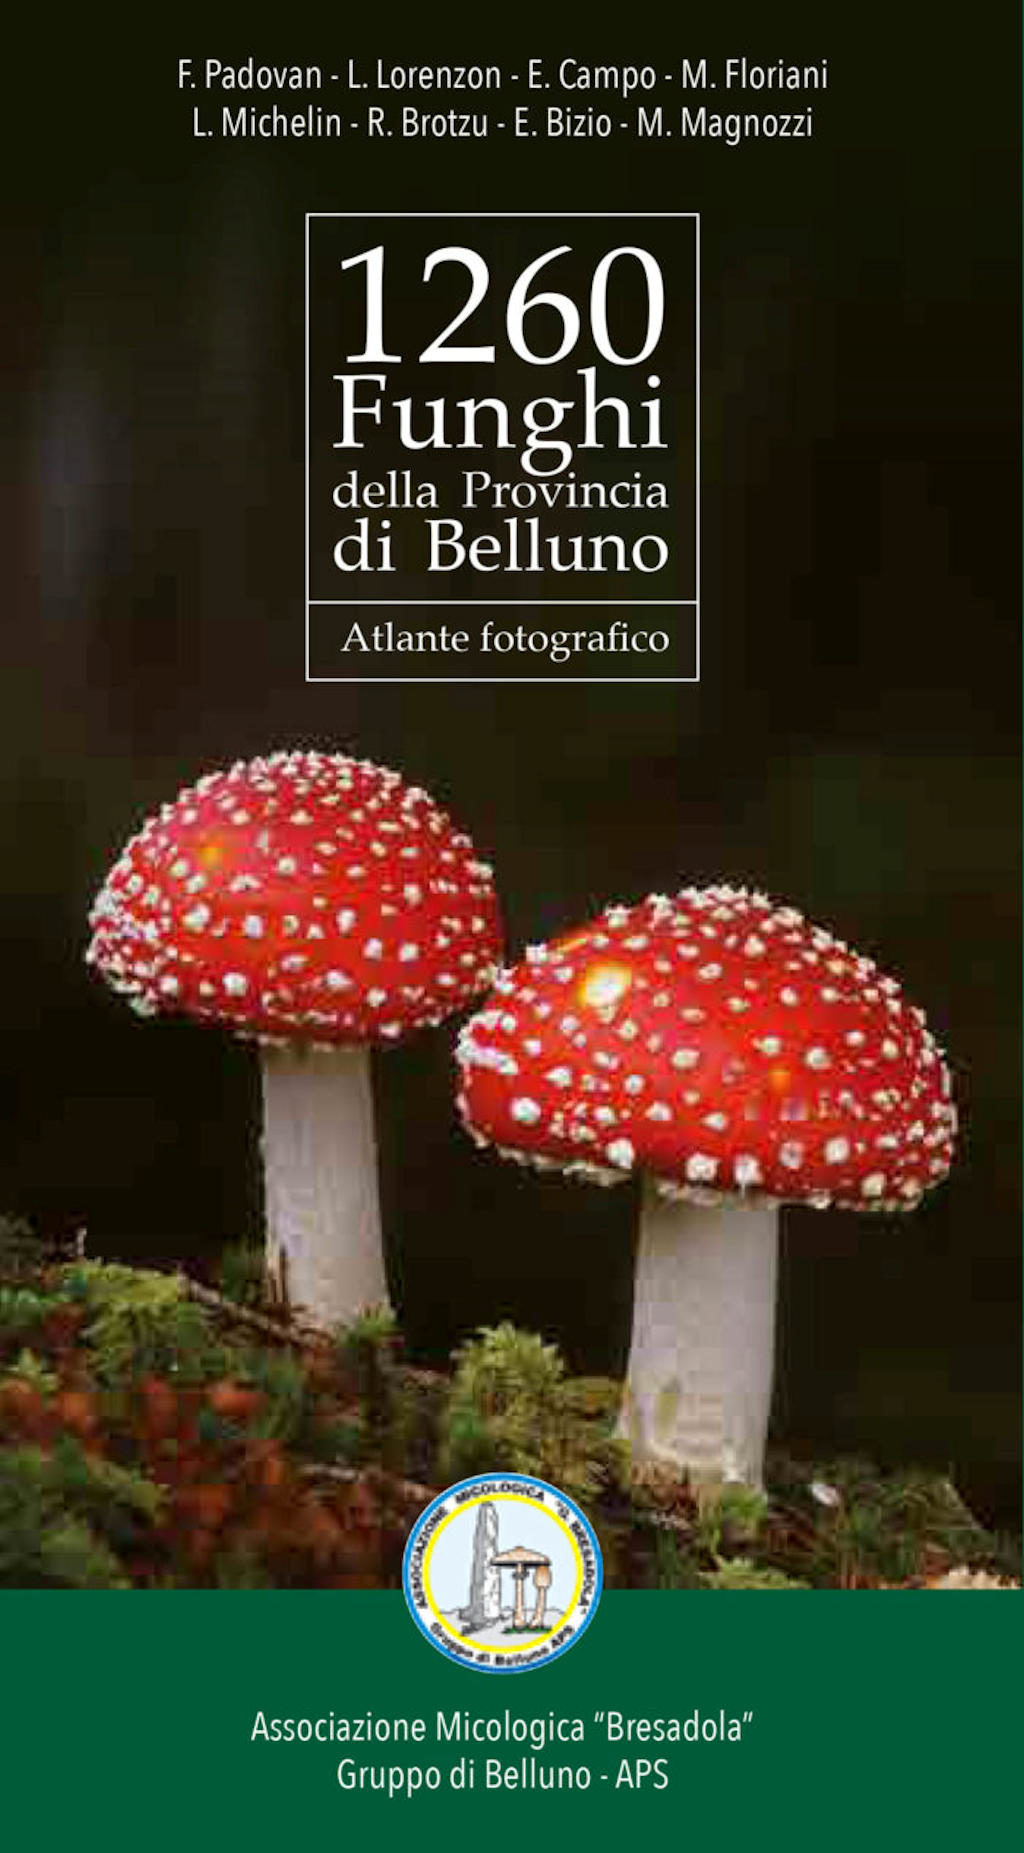 1260 Funghi della Provincia di Belluno - Atlante fotografico